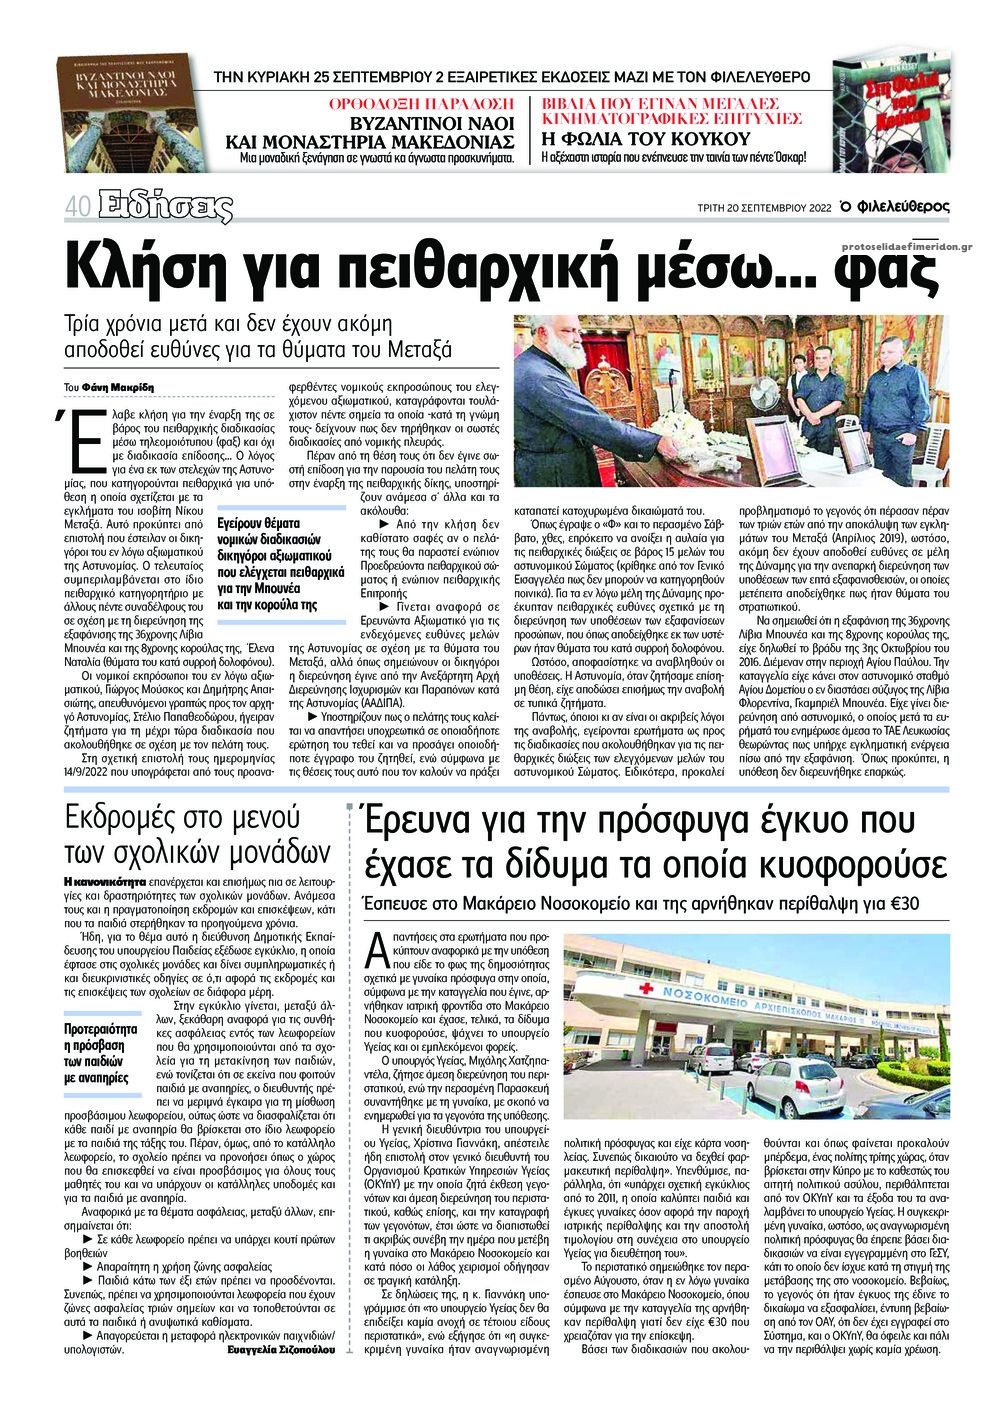 Οπισθόφυλλο εφημερίδας Ο Φιλελεύθερος Κύπρου